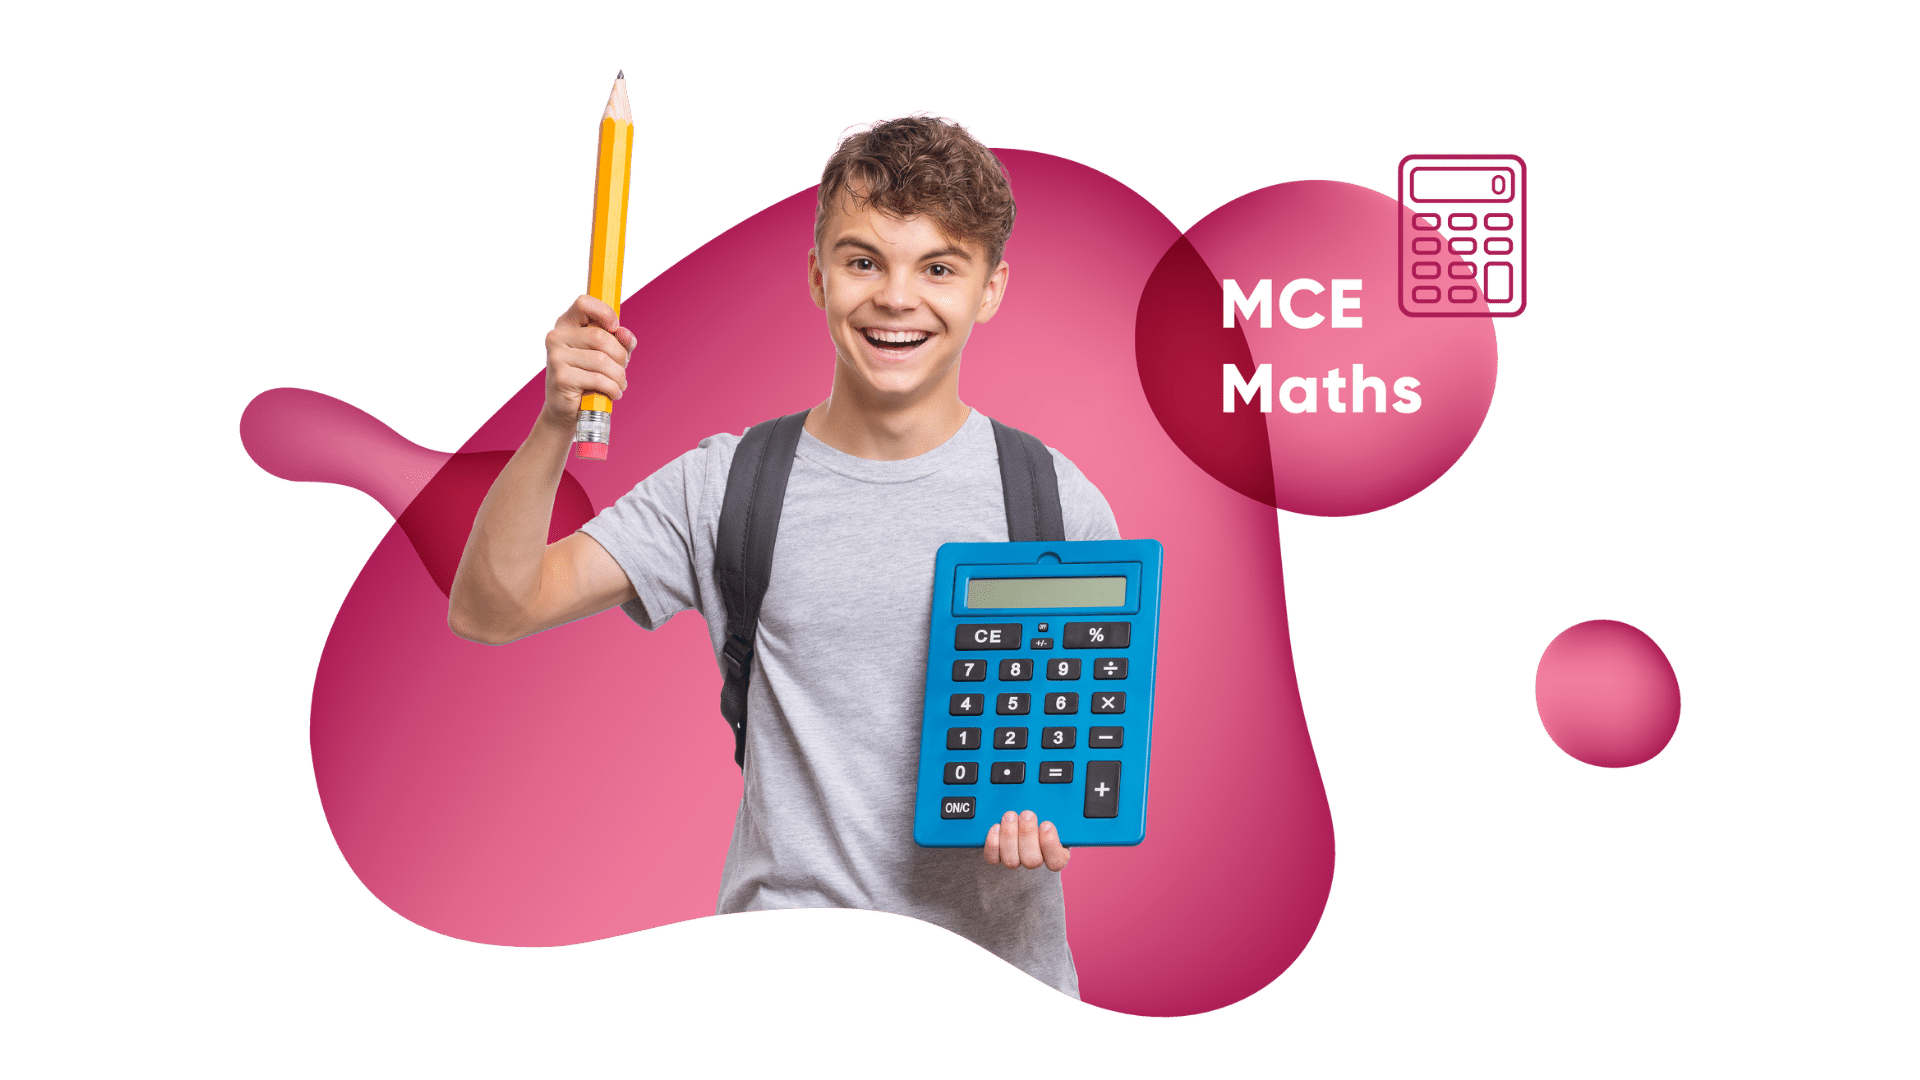 Marshall Cavendish Education Maths